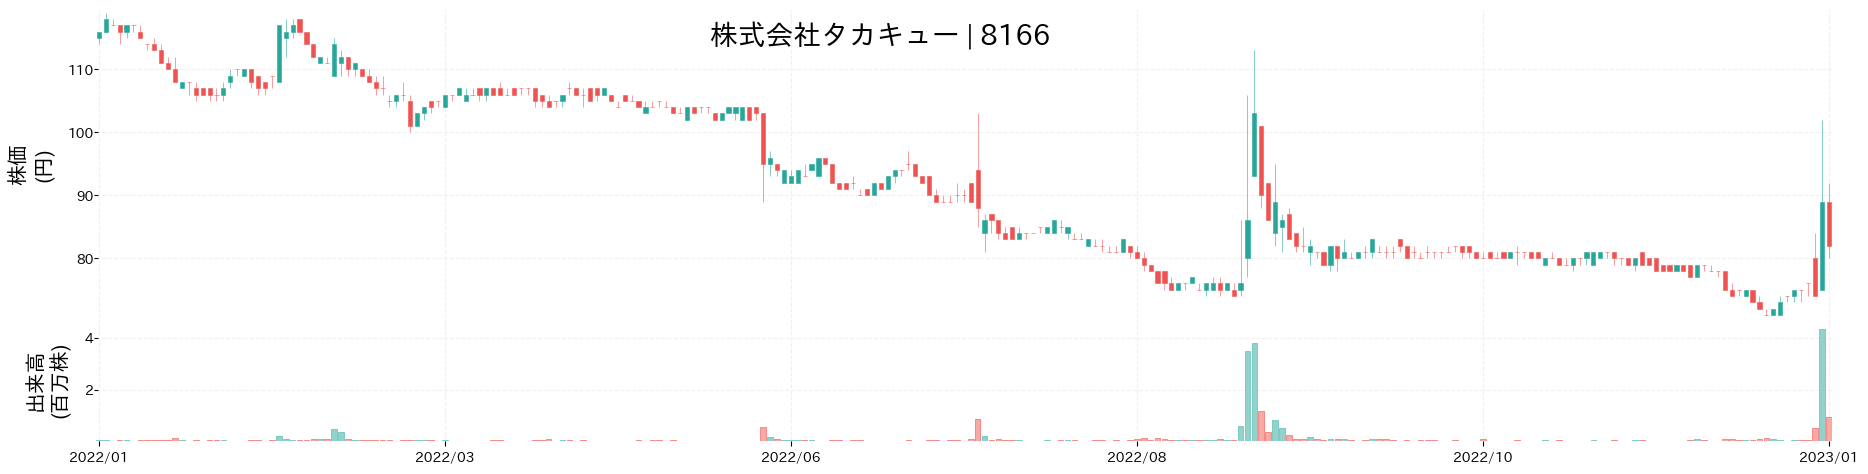 タカキューの株価推移(2022)